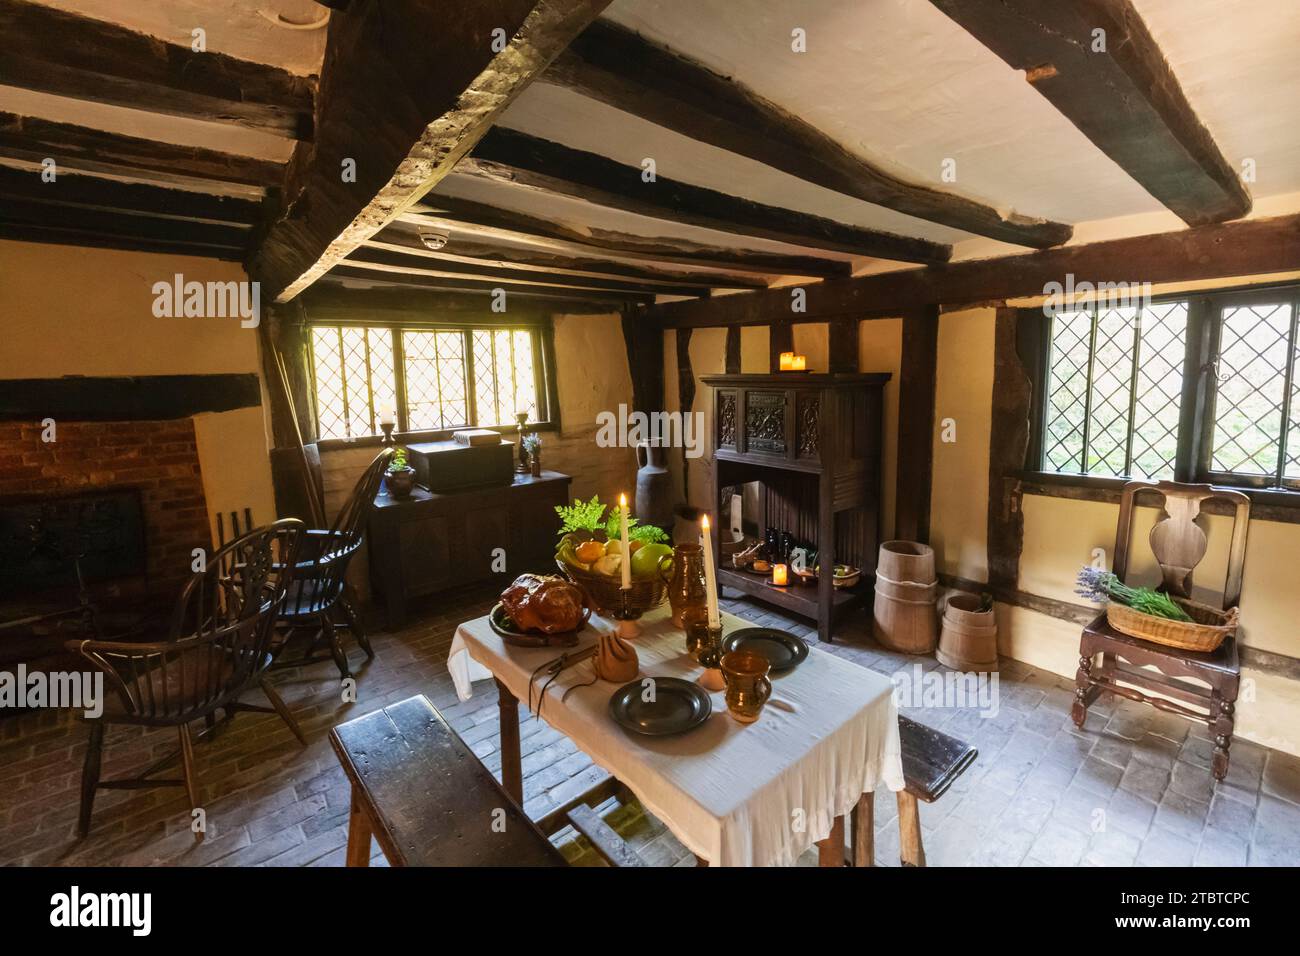 Inglaterra, East Sussex, Alfriston, Alfriston Village, Alfriston Clergy House, vista interior del comedor de la era Tudor Foto de stock